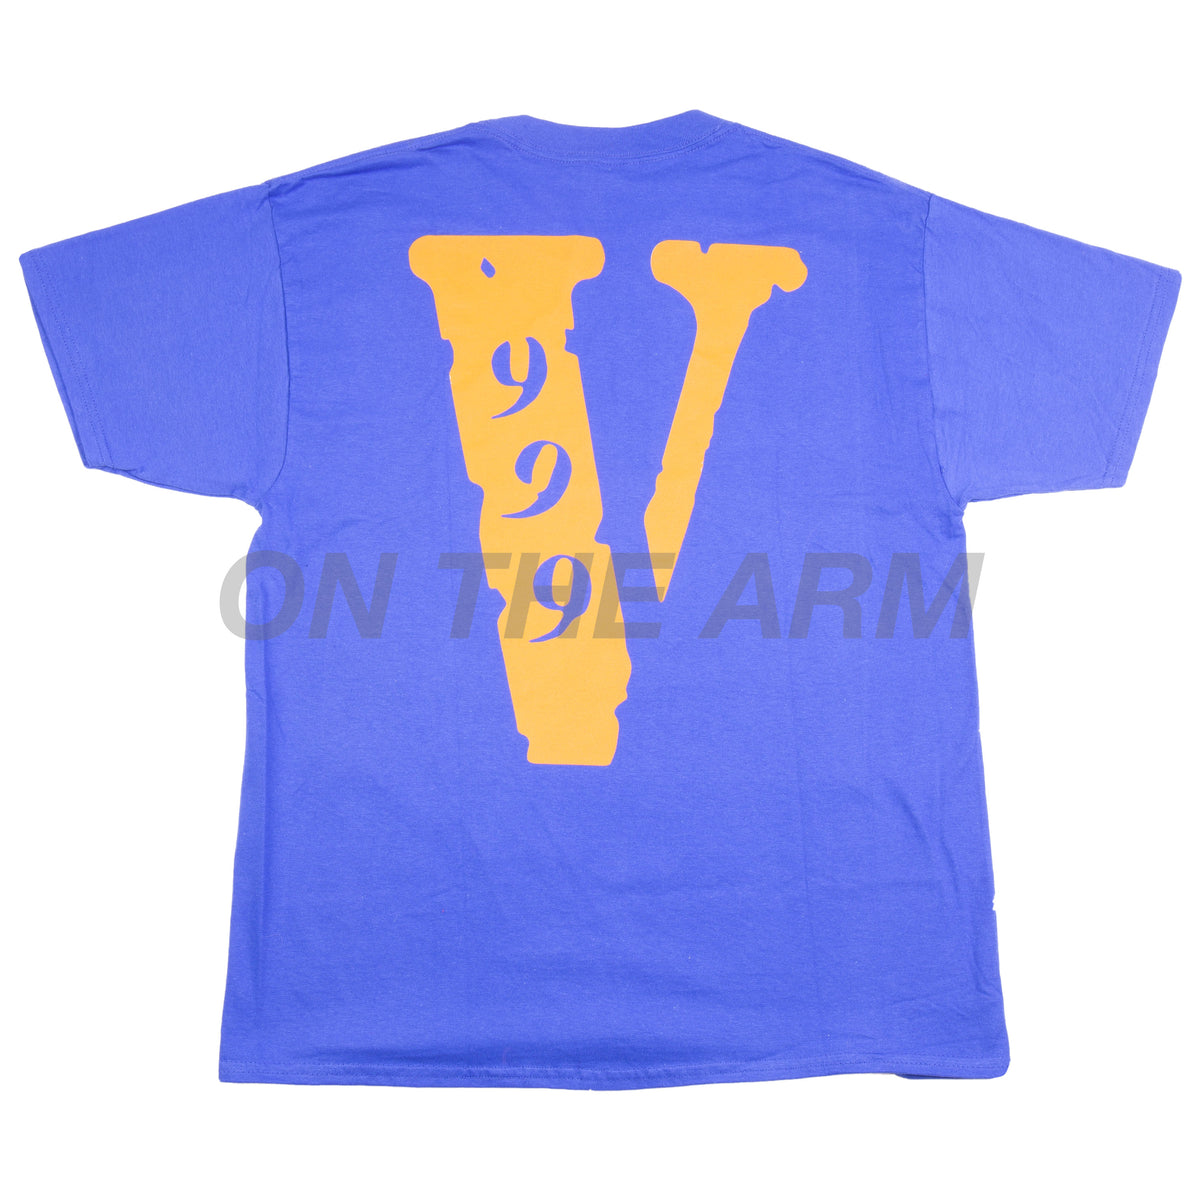 Vlone - Juice Wrld 999 T-Shirt - Black/Orange L